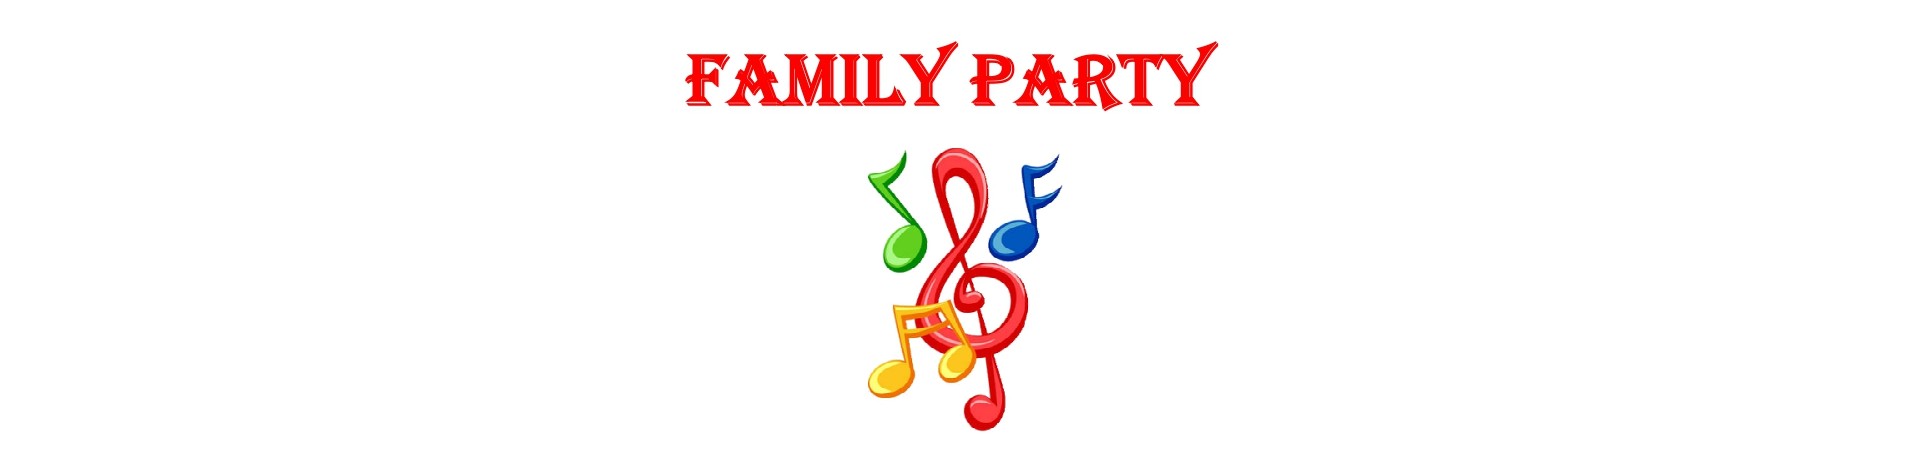 Visit-Sogliano-eventi-family-party-banner1920